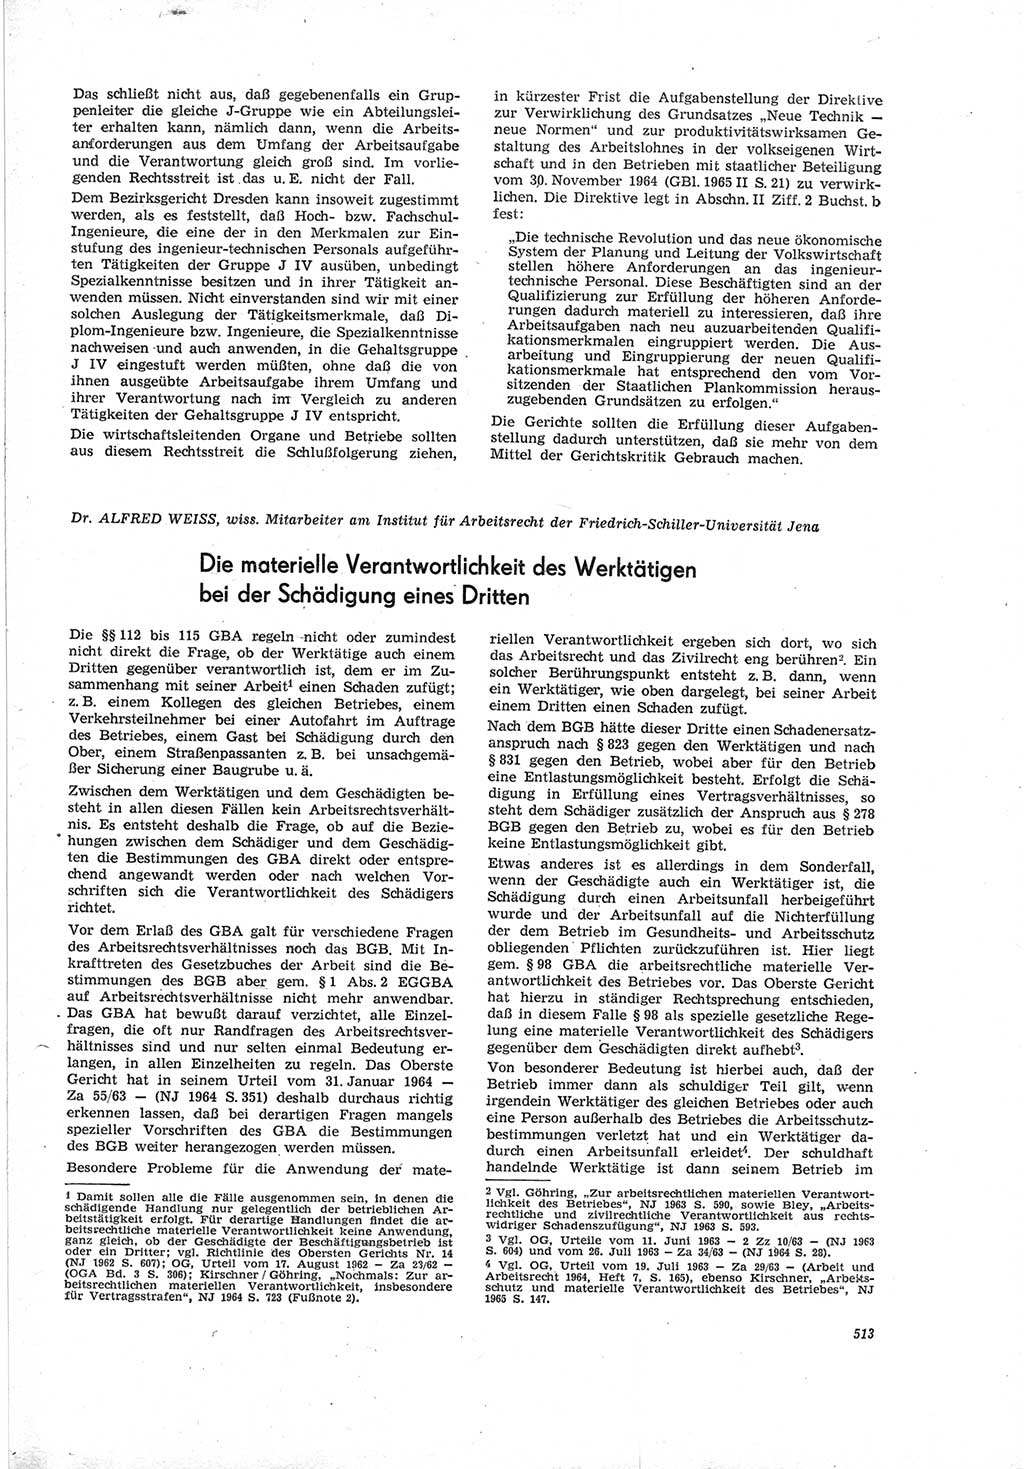 Neue Justiz (NJ), Zeitschrift für Recht und Rechtswissenschaft [Deutsche Demokratische Republik (DDR)], 19. Jahrgang 1965, Seite 513 (NJ DDR 1965, S. 513)